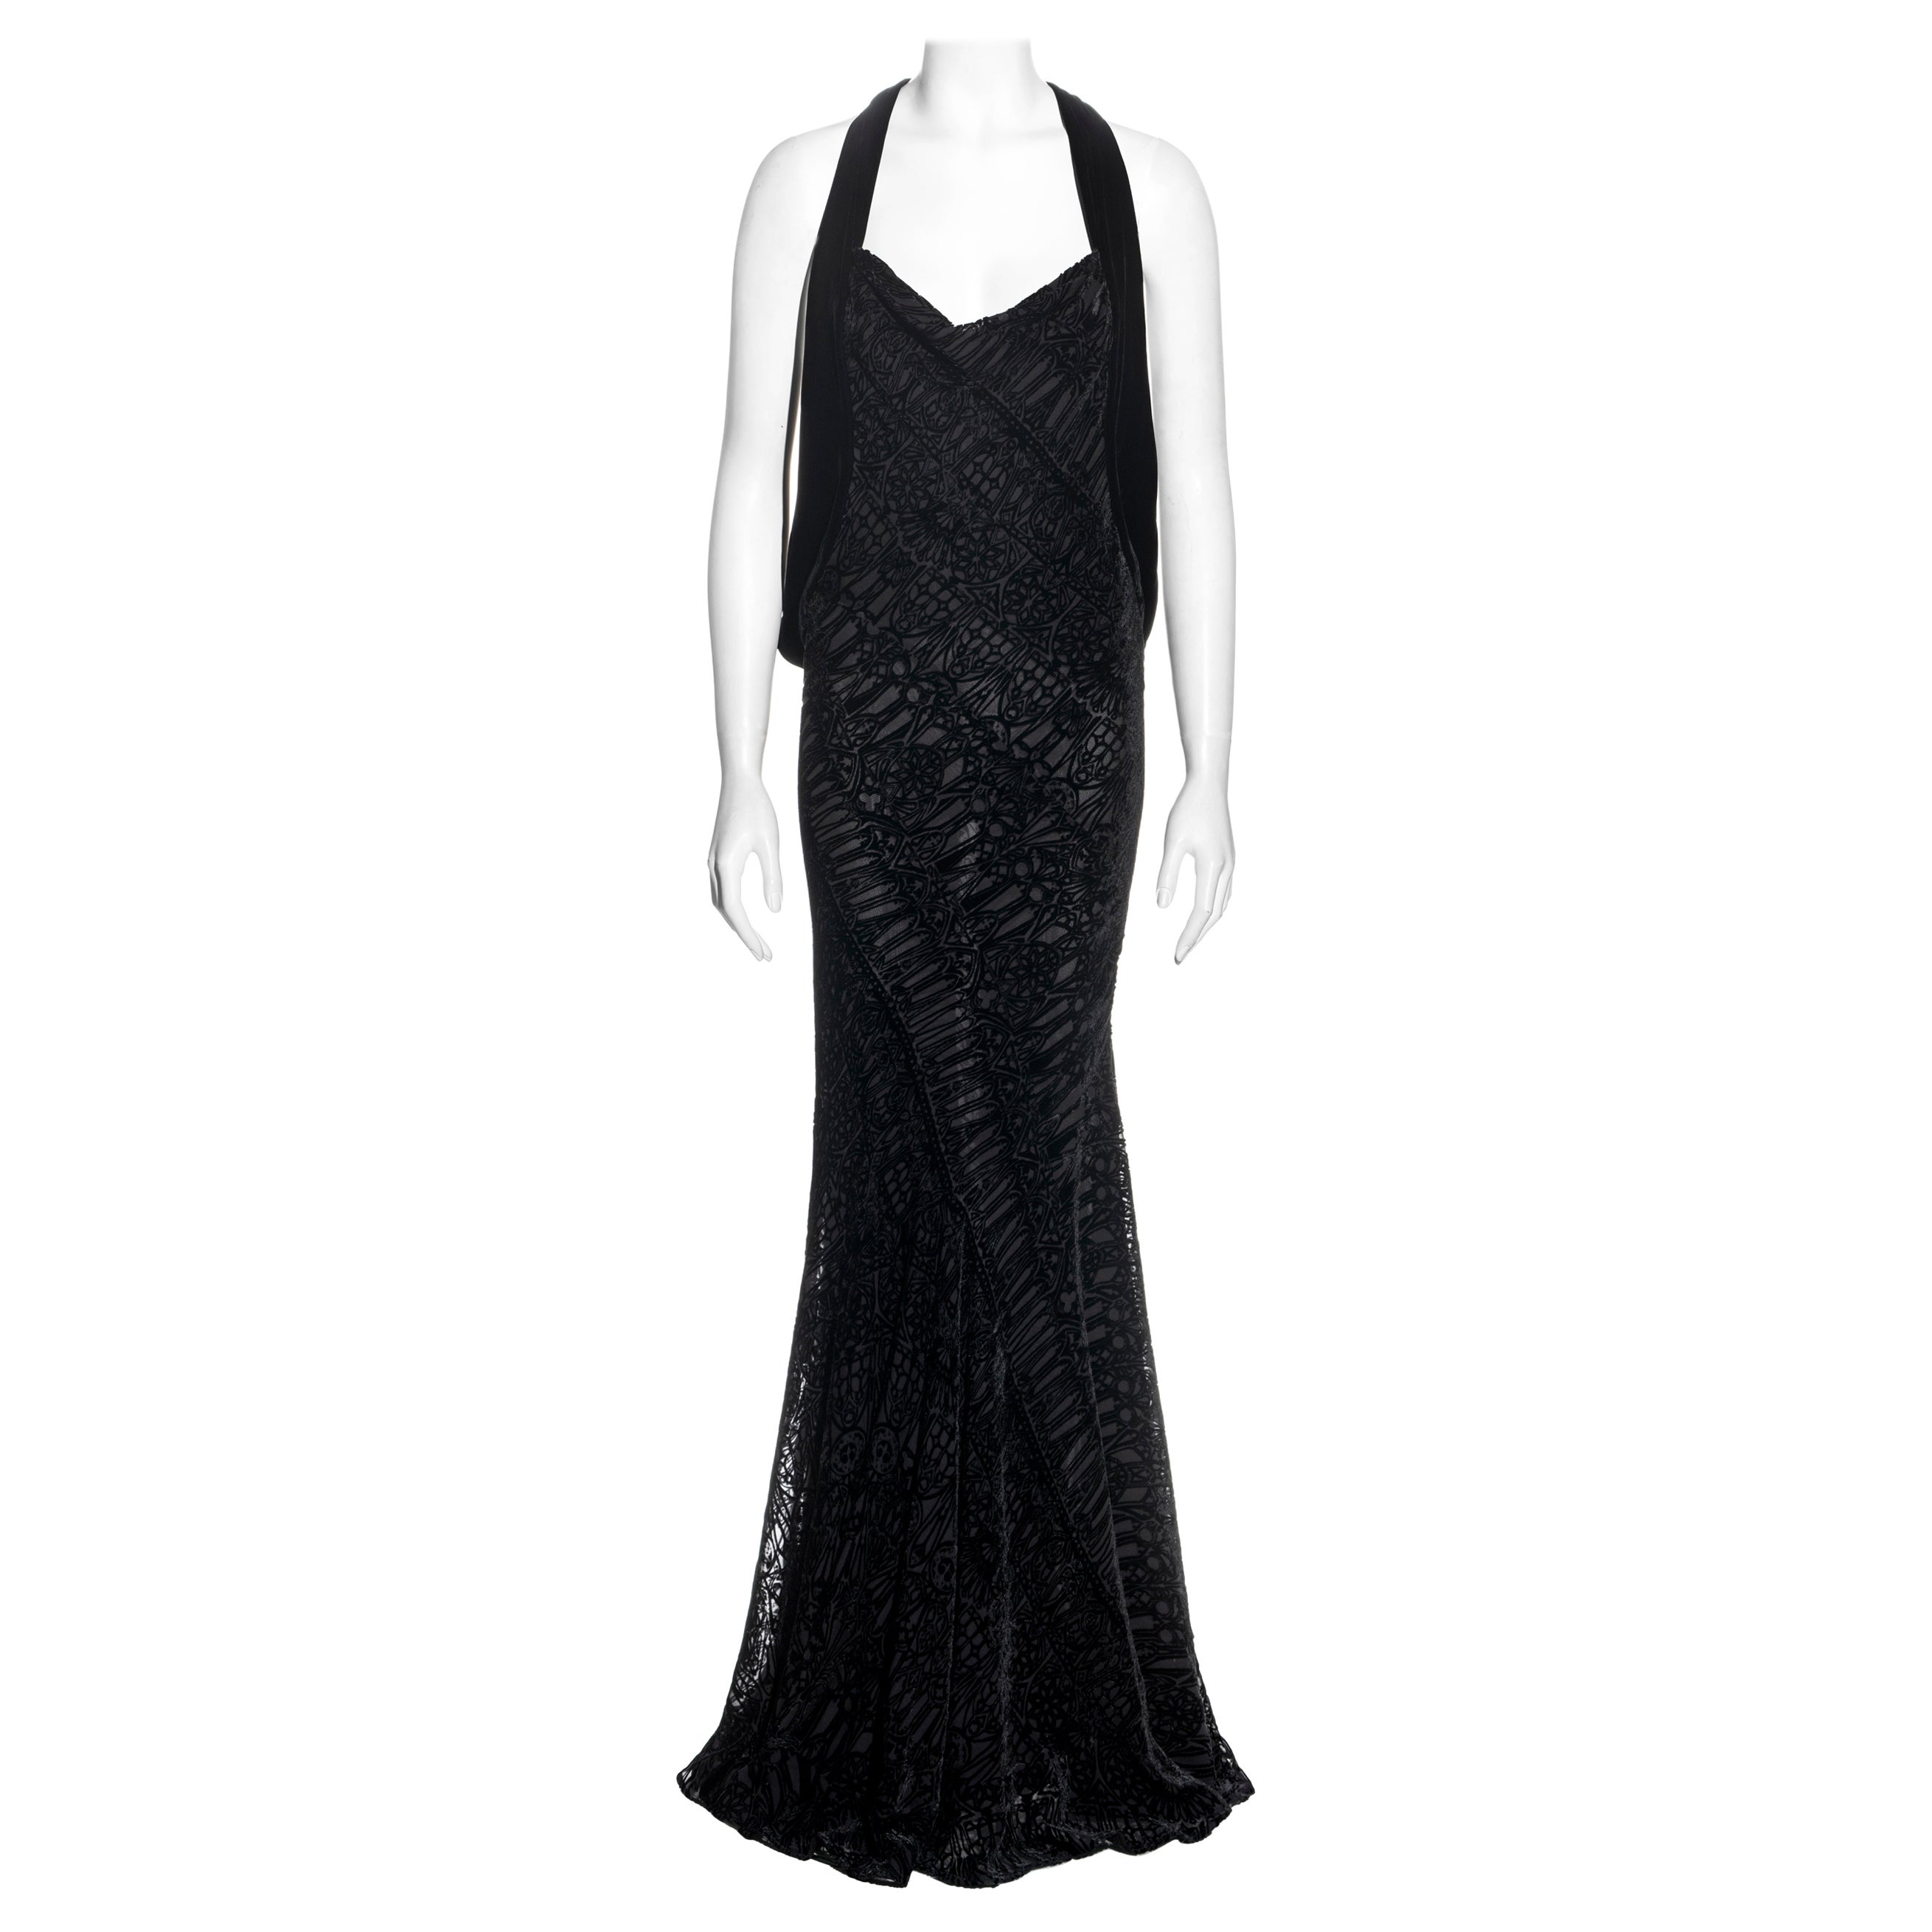 Alexander McQueen black silk devoré corseted evening dress, fw 2004